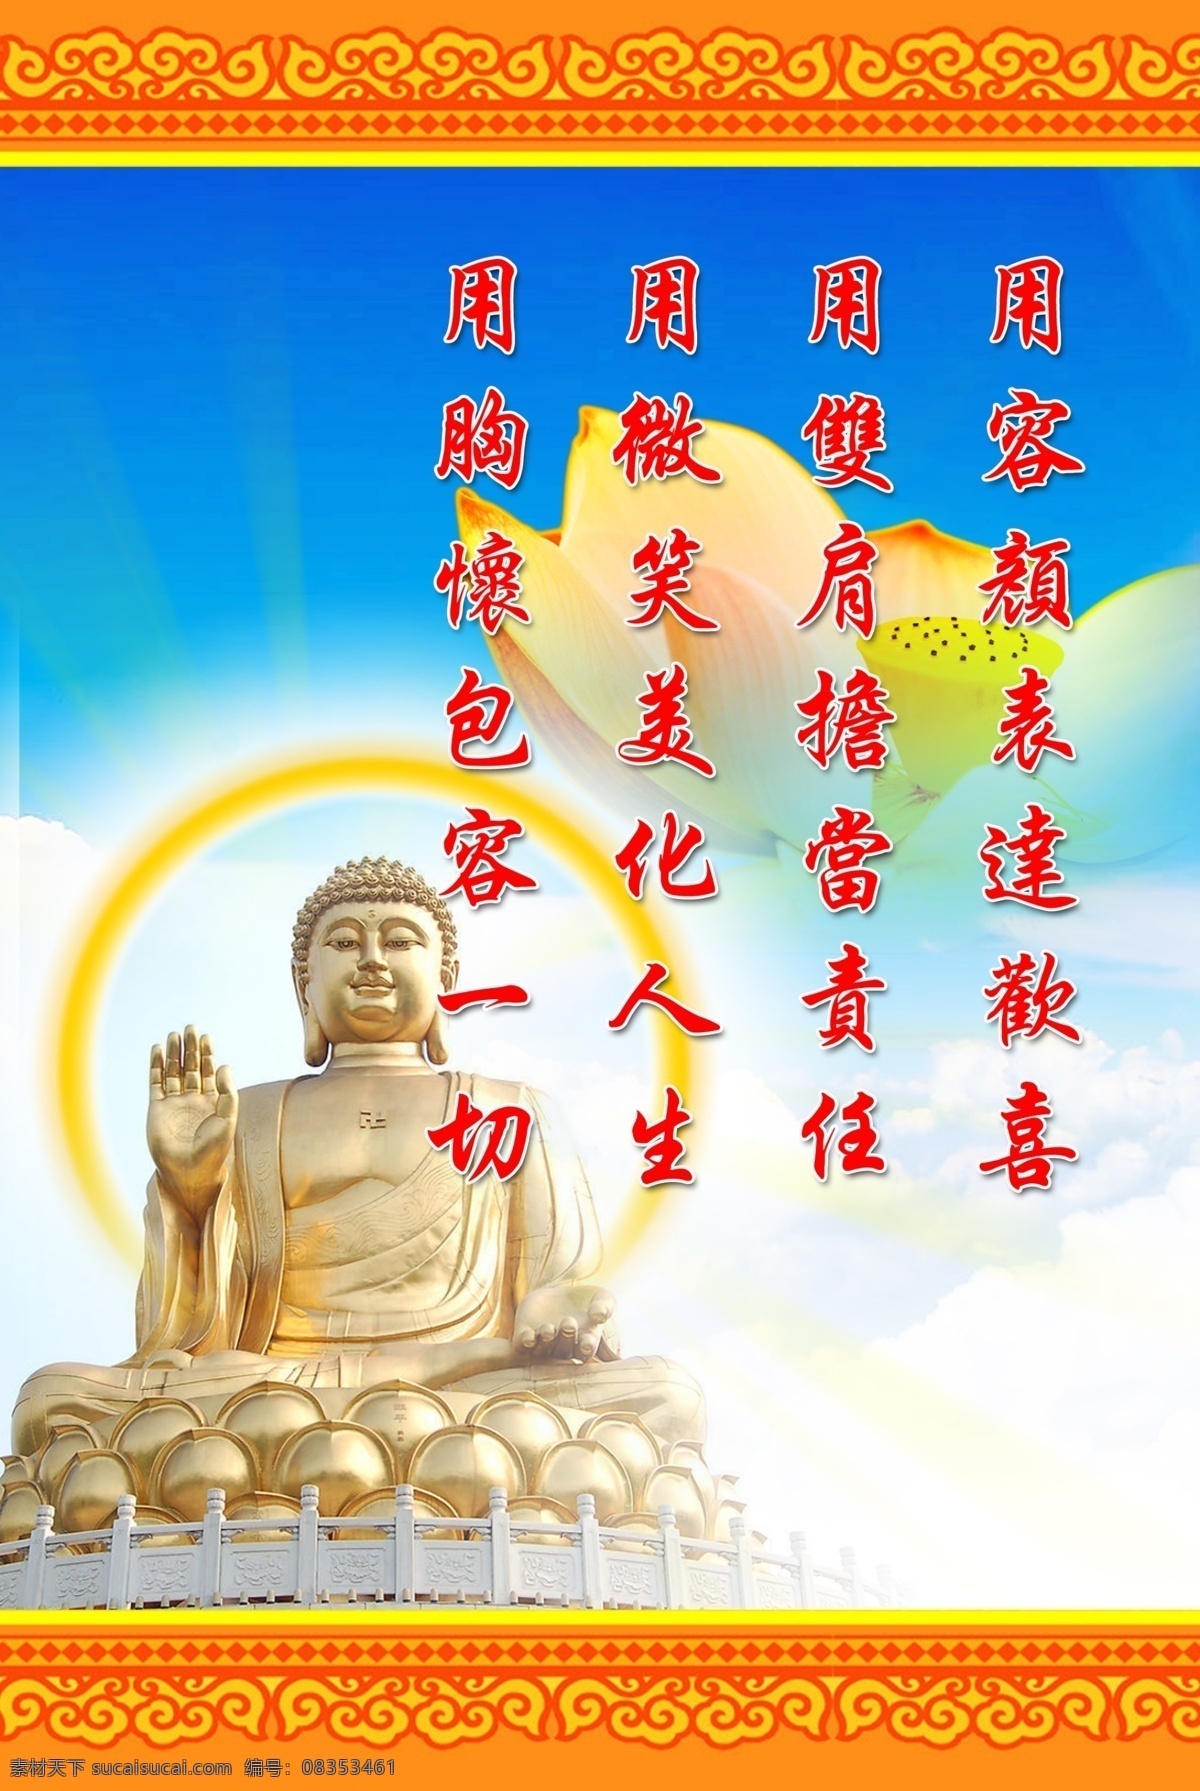 佛教 展板 佛像 如来 佛祖 荷花 古典 展板模板 广告设计模板 源文件